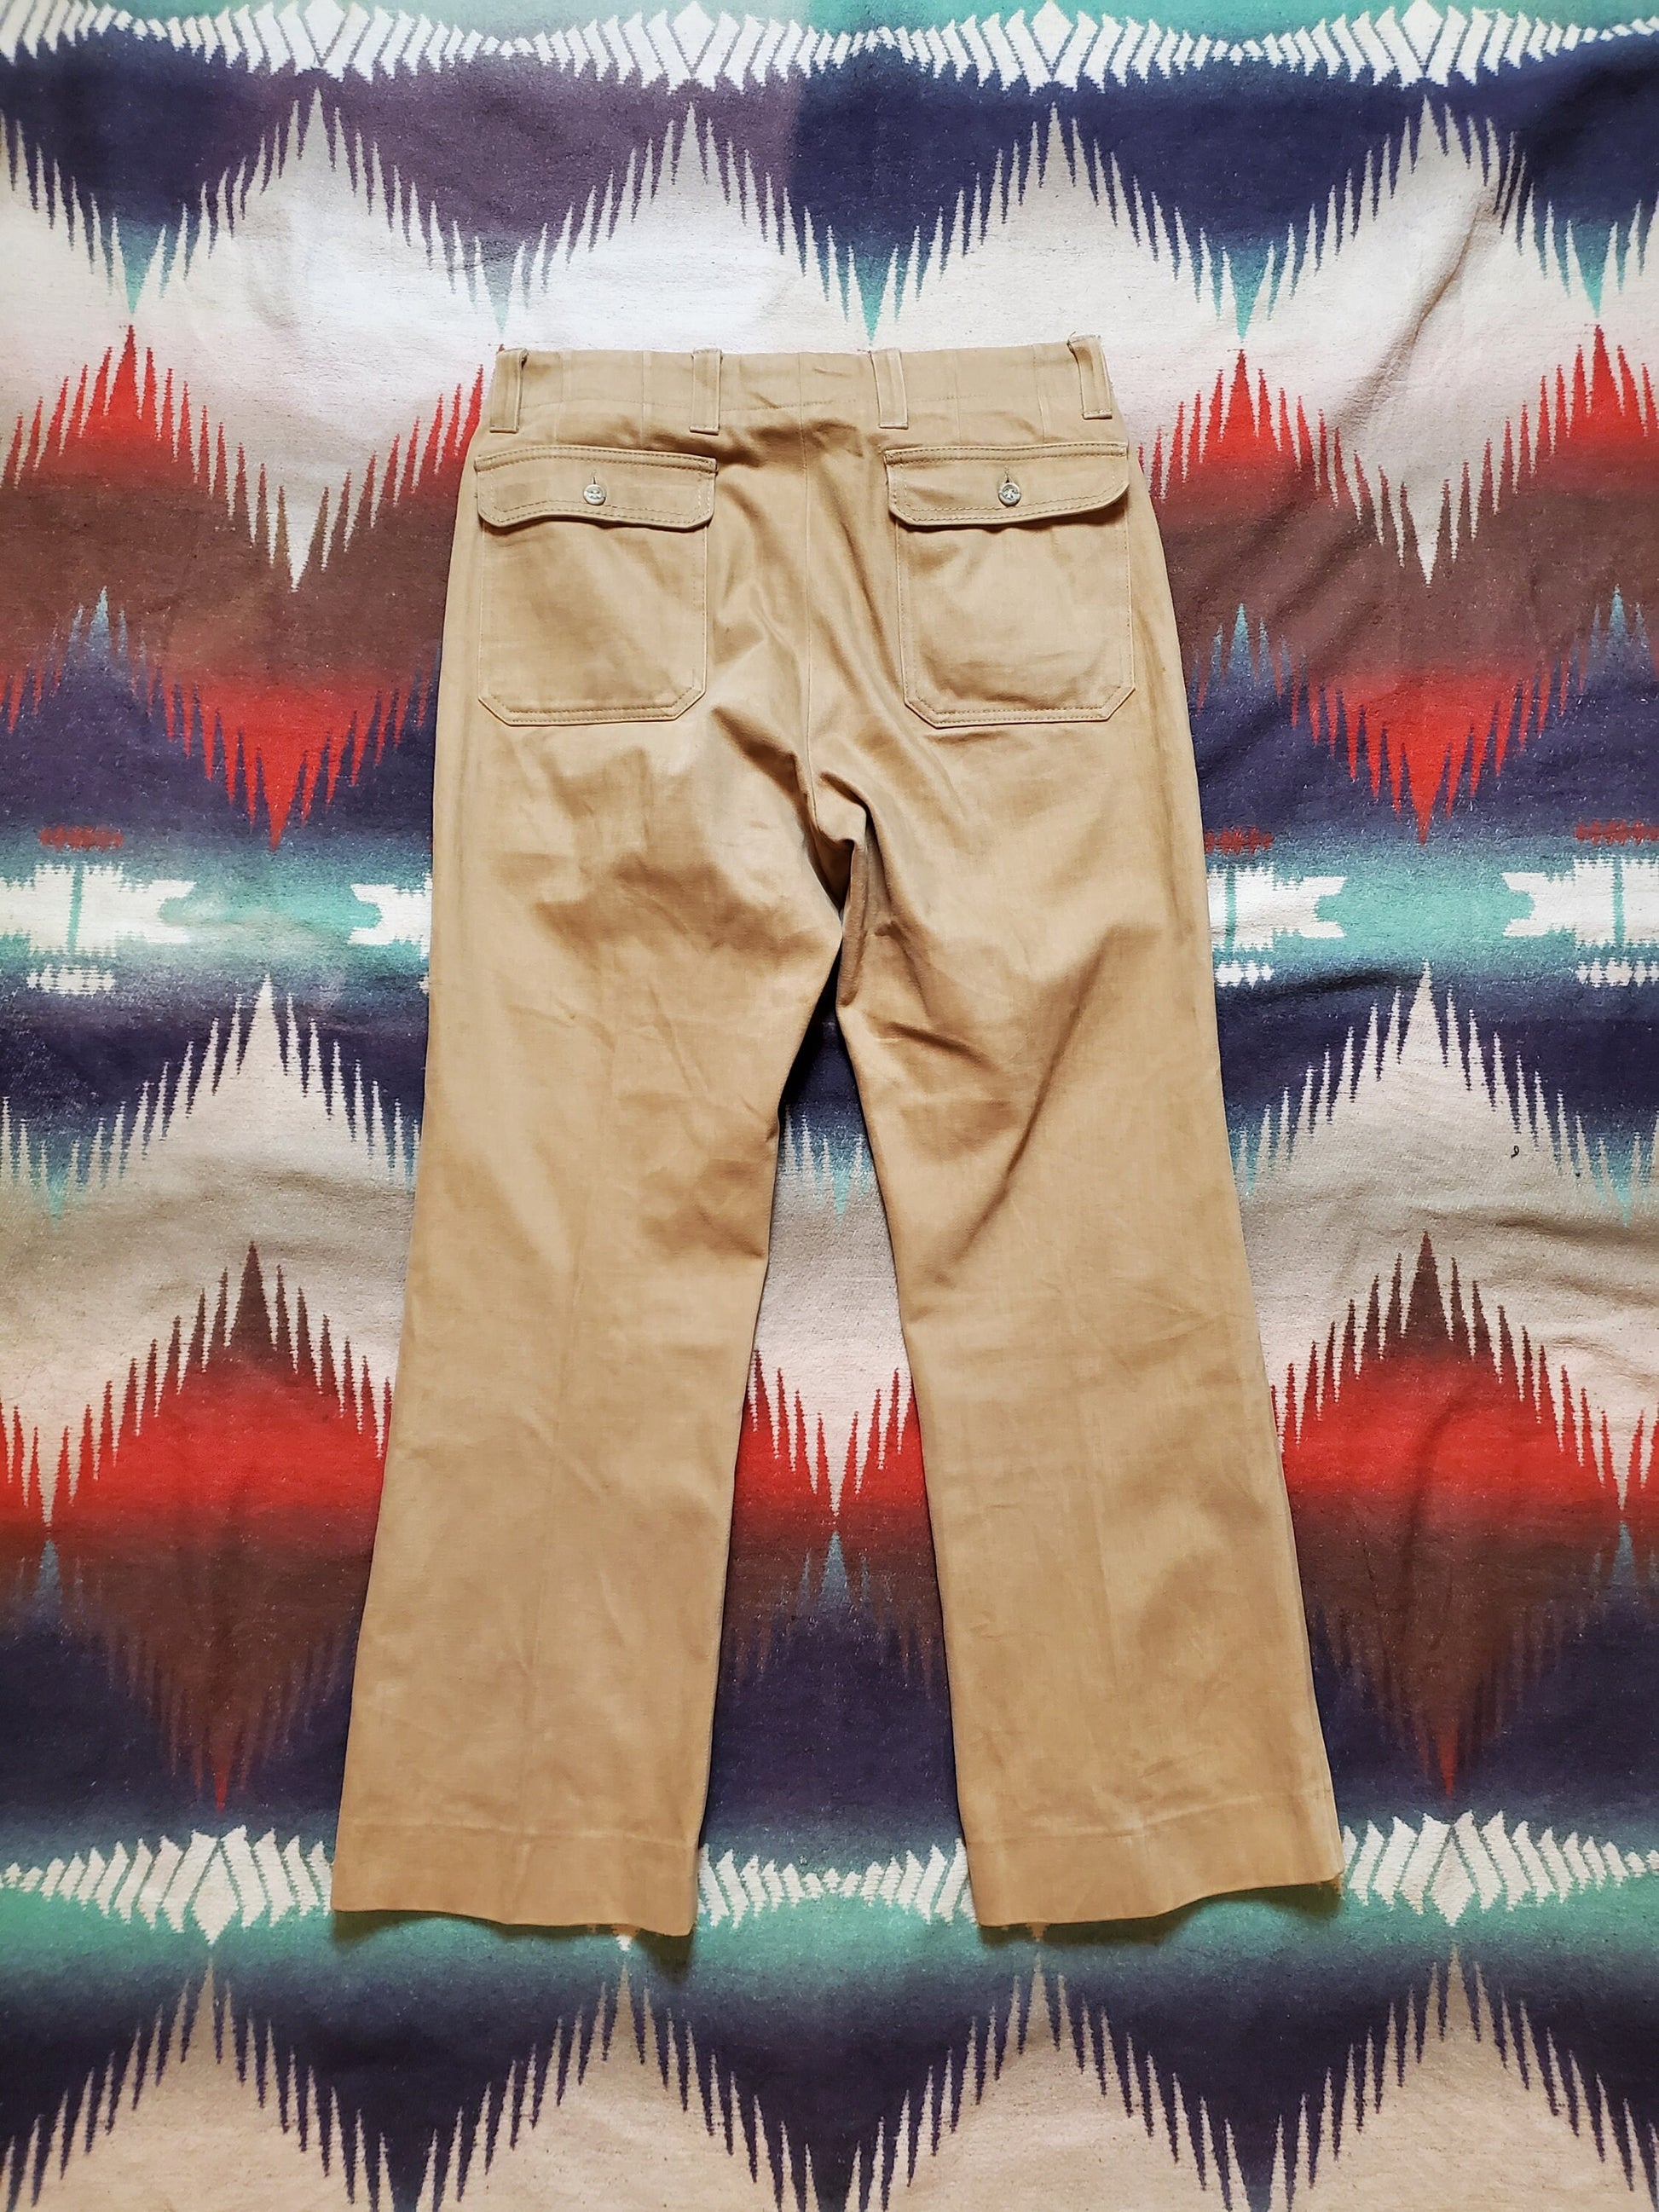 1970s Mighty Mac Moleskin Pants Size 34x29.75